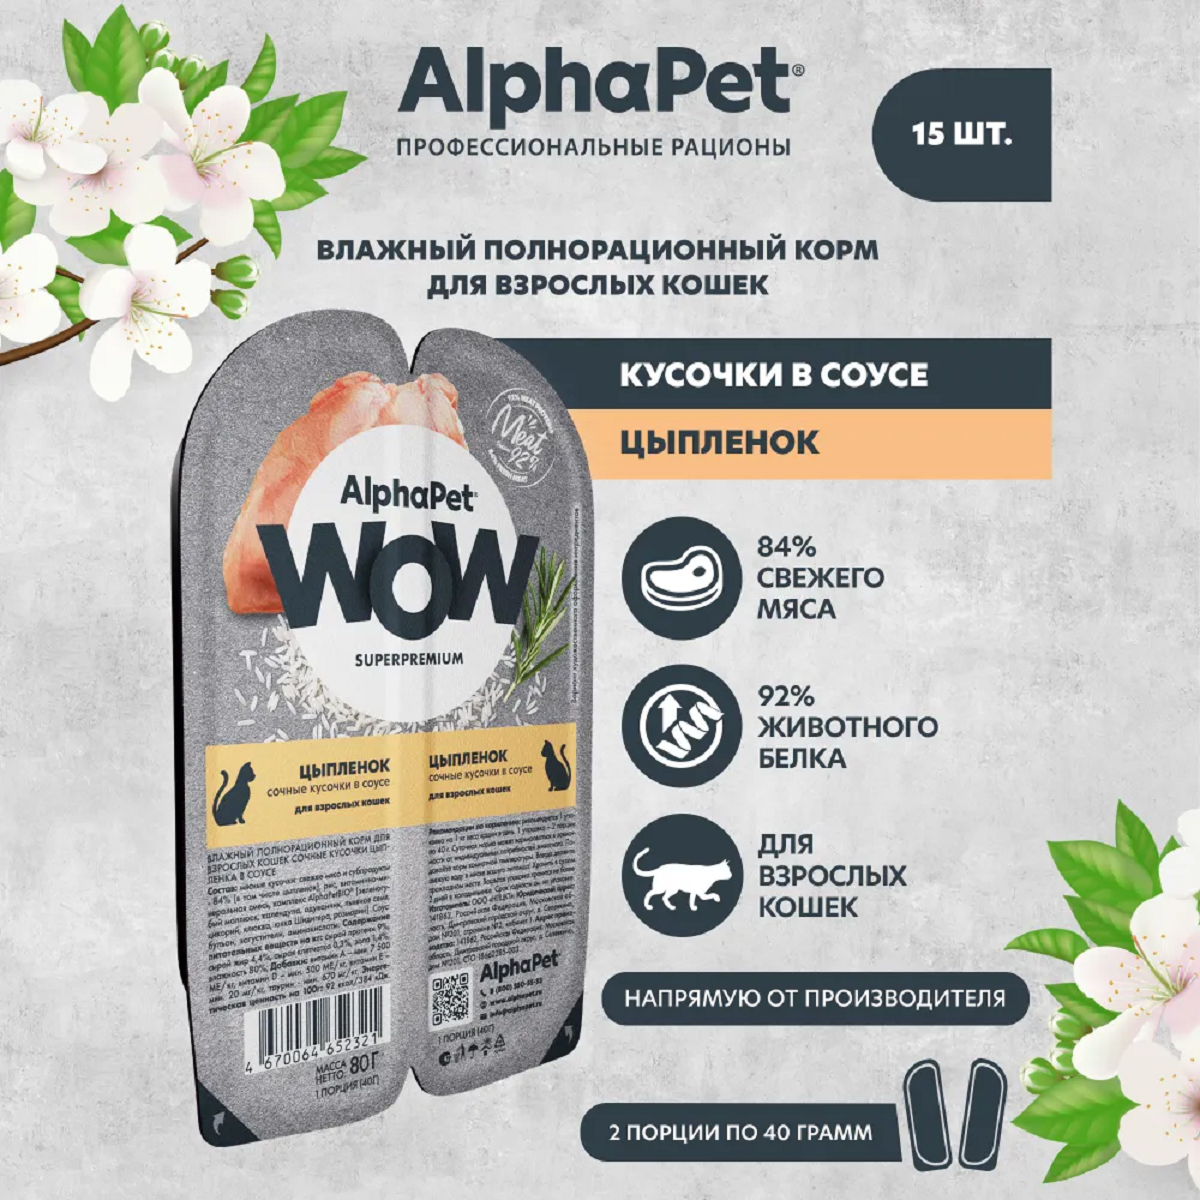 AlphaPet WOW пауч для кошек сочные кусочки в соусе Цыпленок 80г (15 штук)